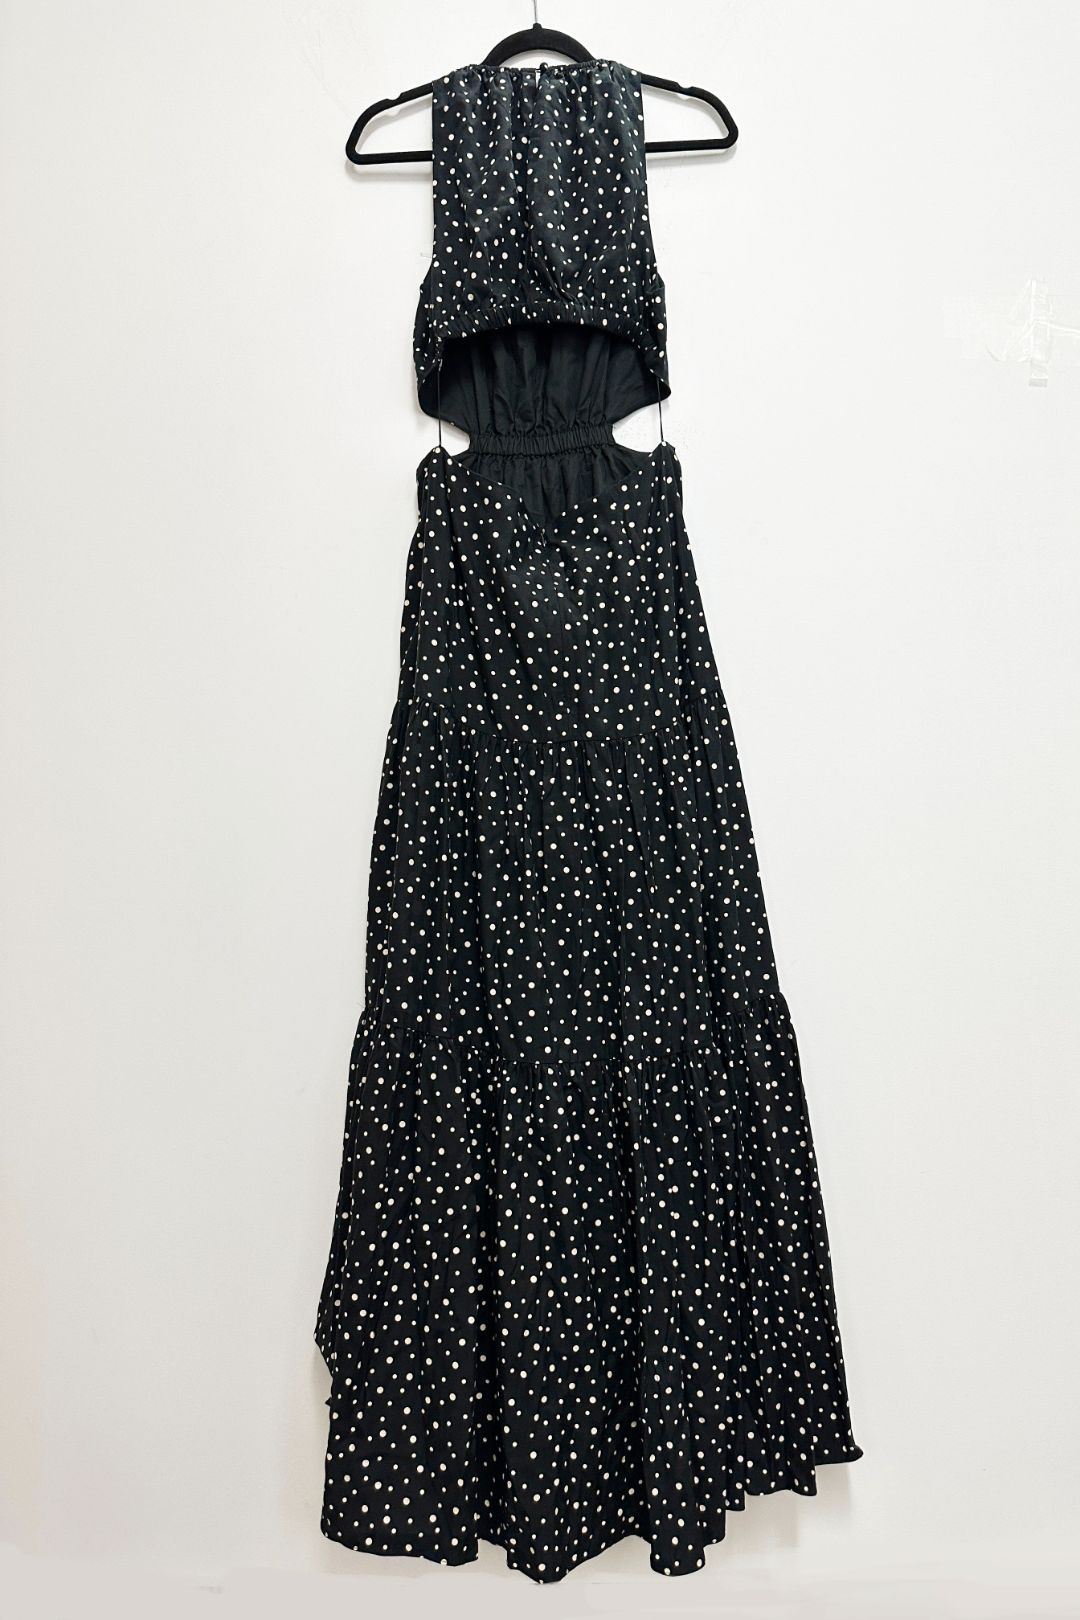 Poppy Dress in Black Cream Polka